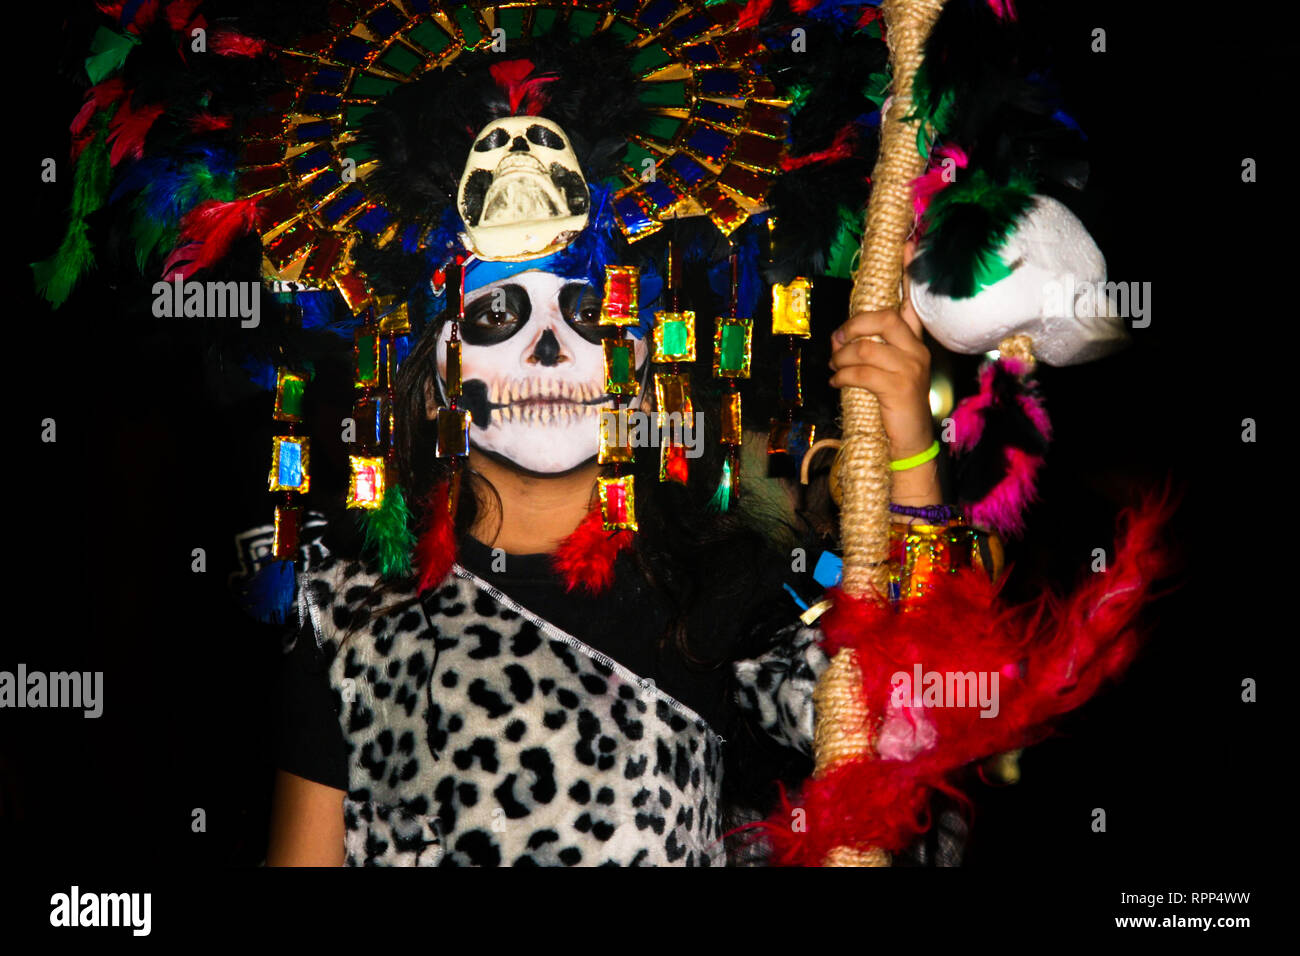 Portrait d'enfant déguisé, avec beaucoup de plumes colorées et masque de crâne maya, le port de tenue léopard, debout dans la rue au cours de l'Assemblée mexicas Banque D'Images